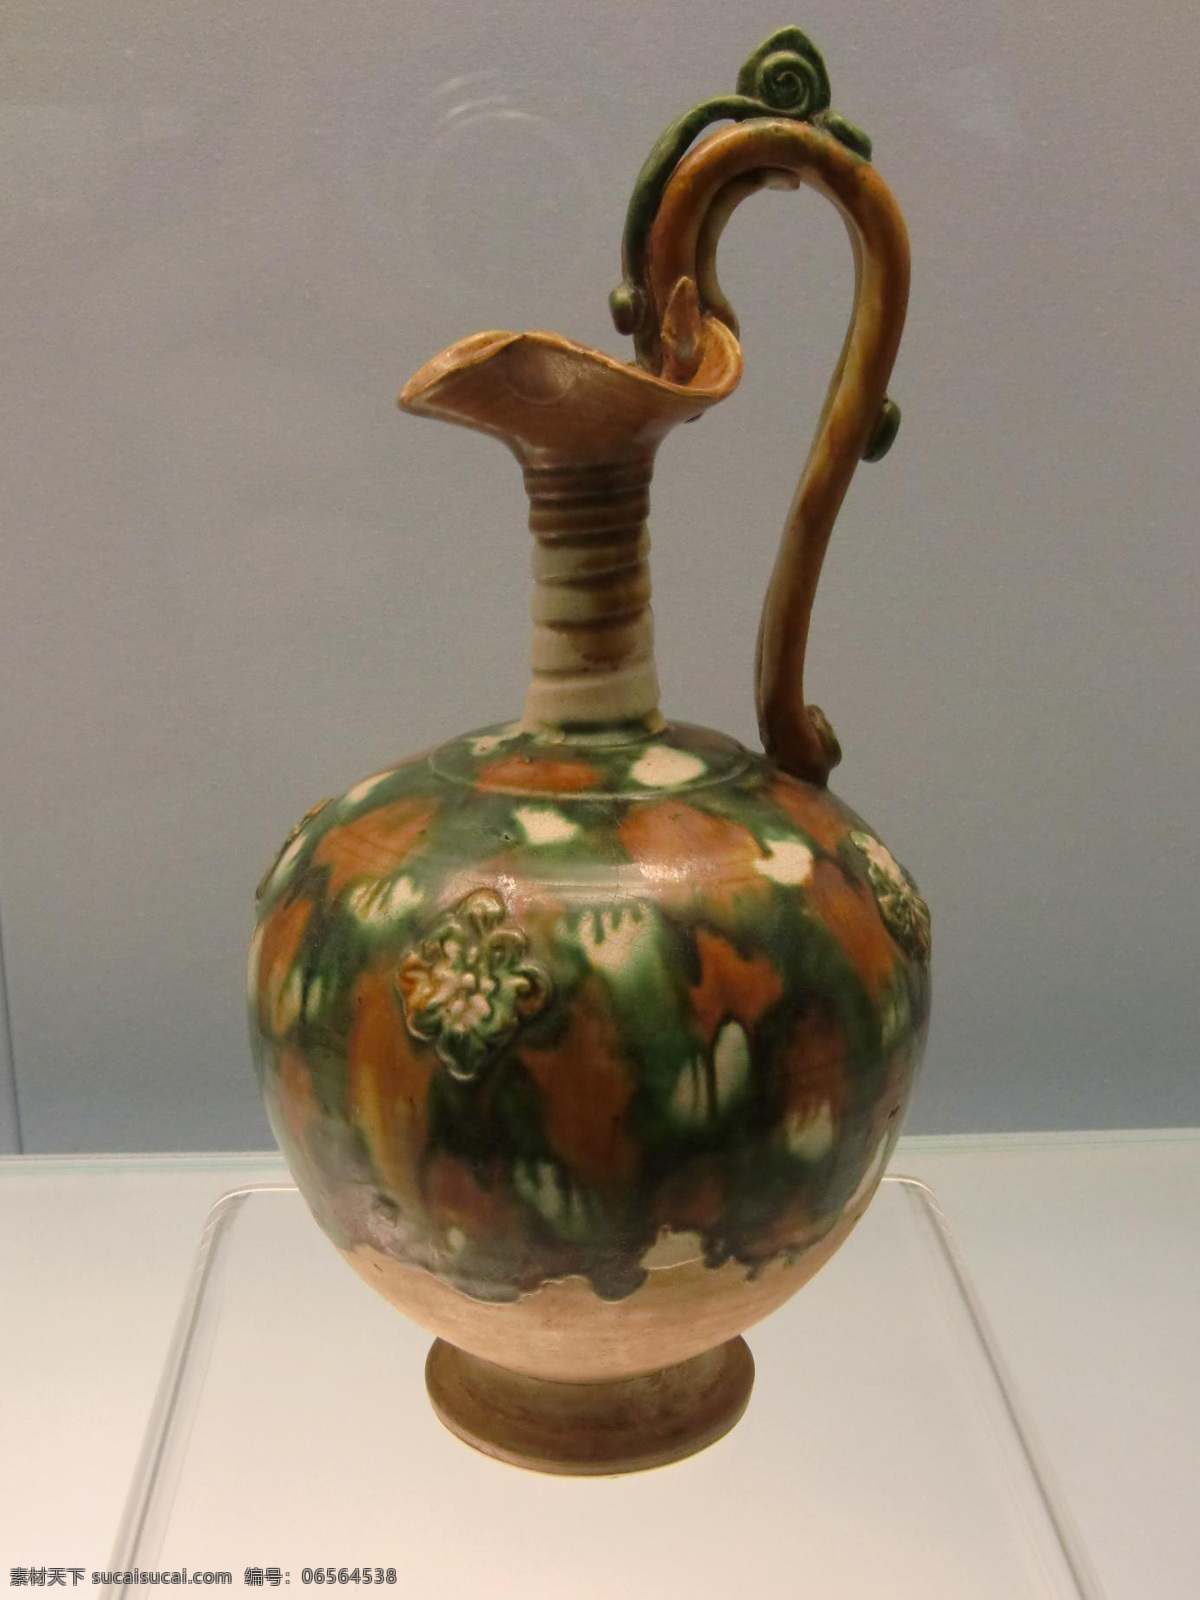 茶壶 酒壶 酒器 壶 陶壶 瓷壶 古陶器 陶器 陶瓷 珍藏品 古玩 古董 工艺品 文化艺术